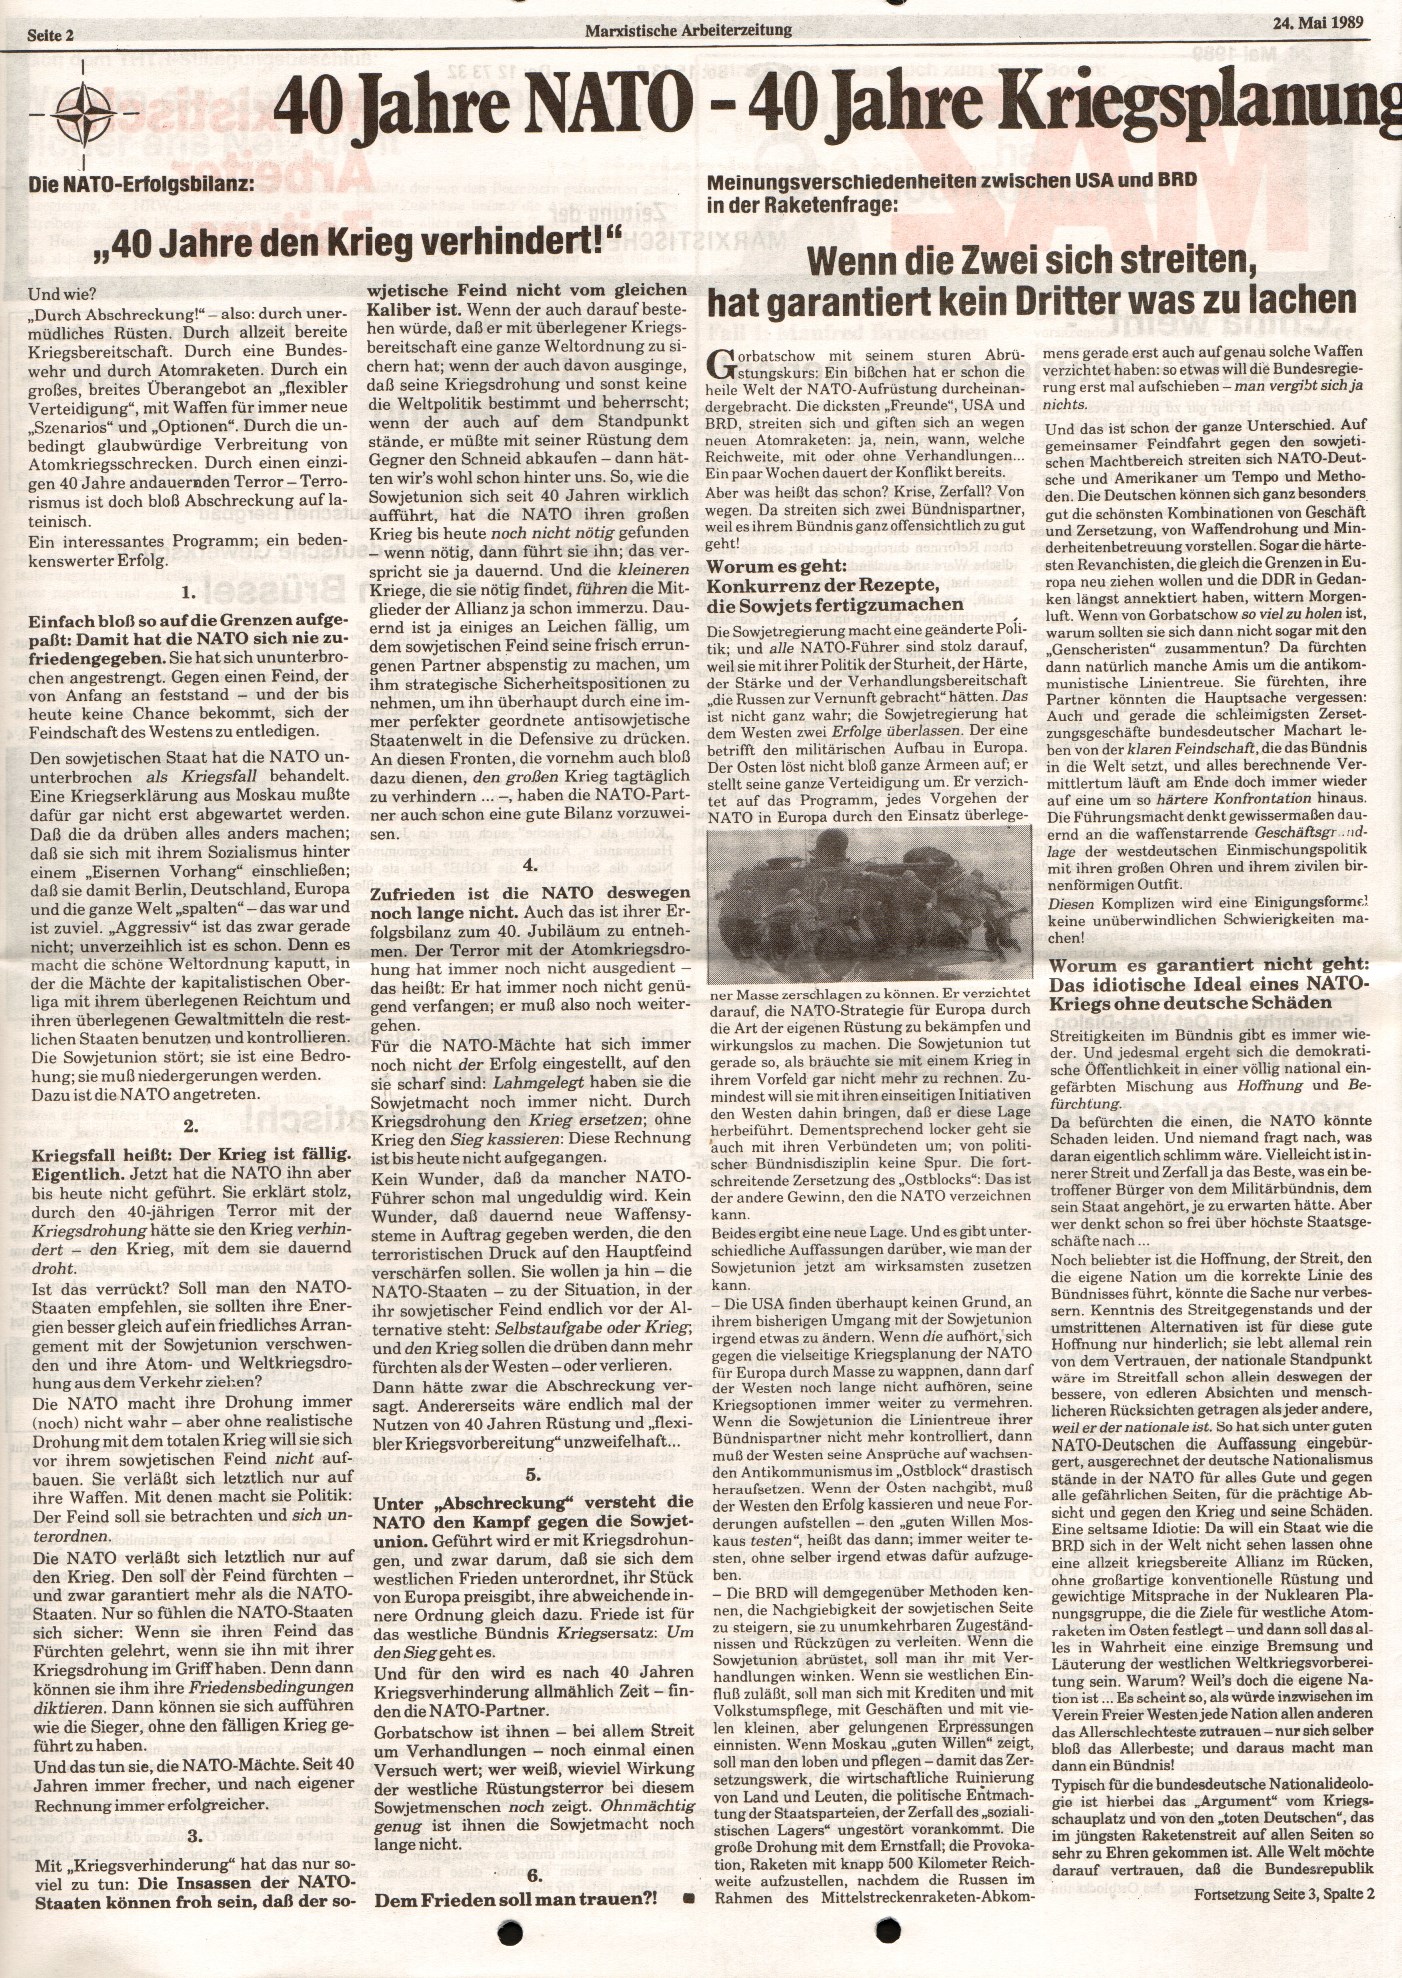 Ruhrgebiet_MG_Marxistische_Arbeiterzeitung_19890524_02